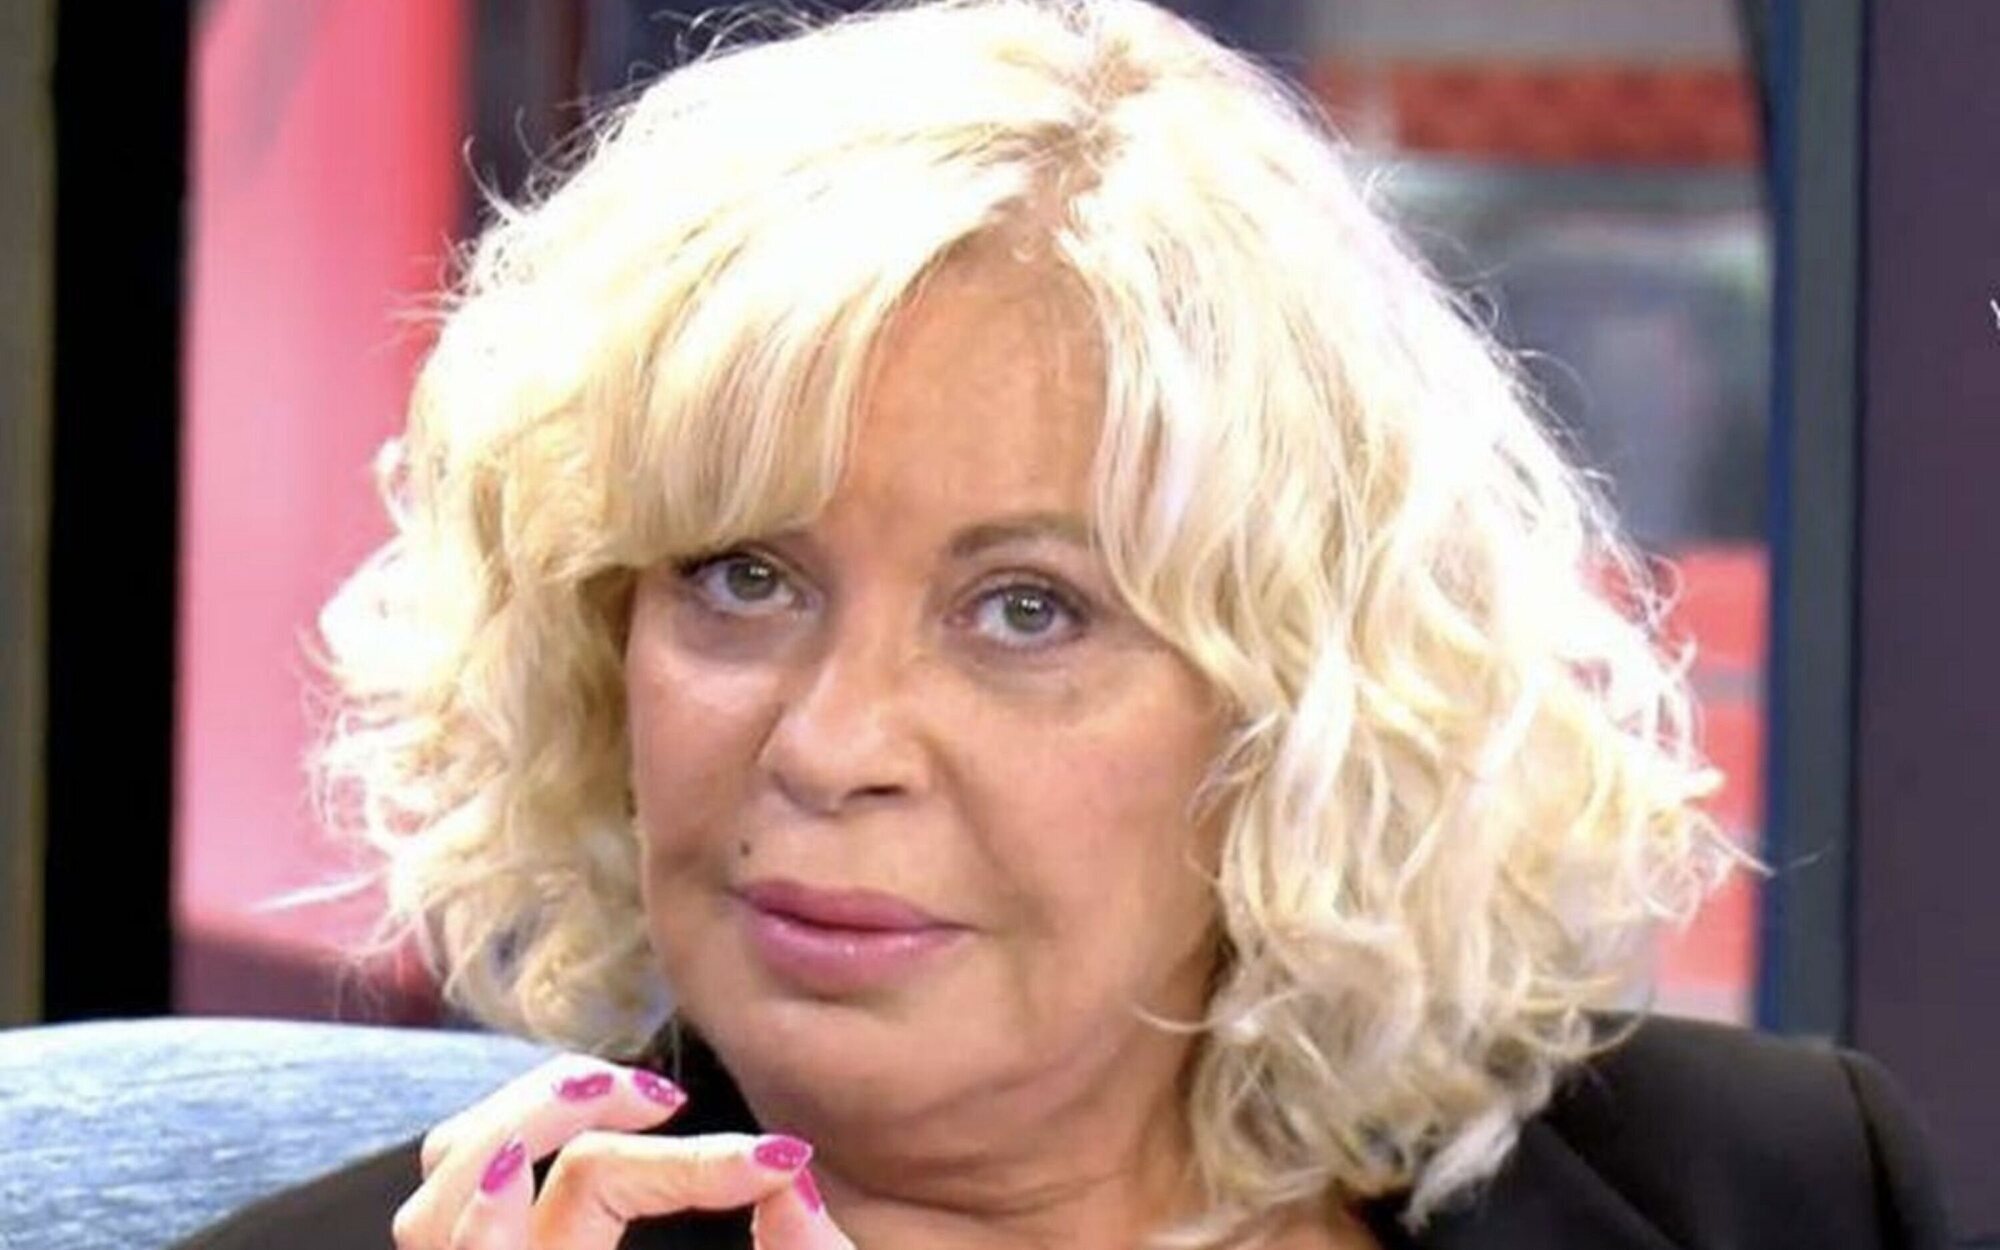 Bárbara Rey irrumpe en 'Sábado deluxe' para defender a Sofía Cristo: "Laváis la cara a quien queréis"